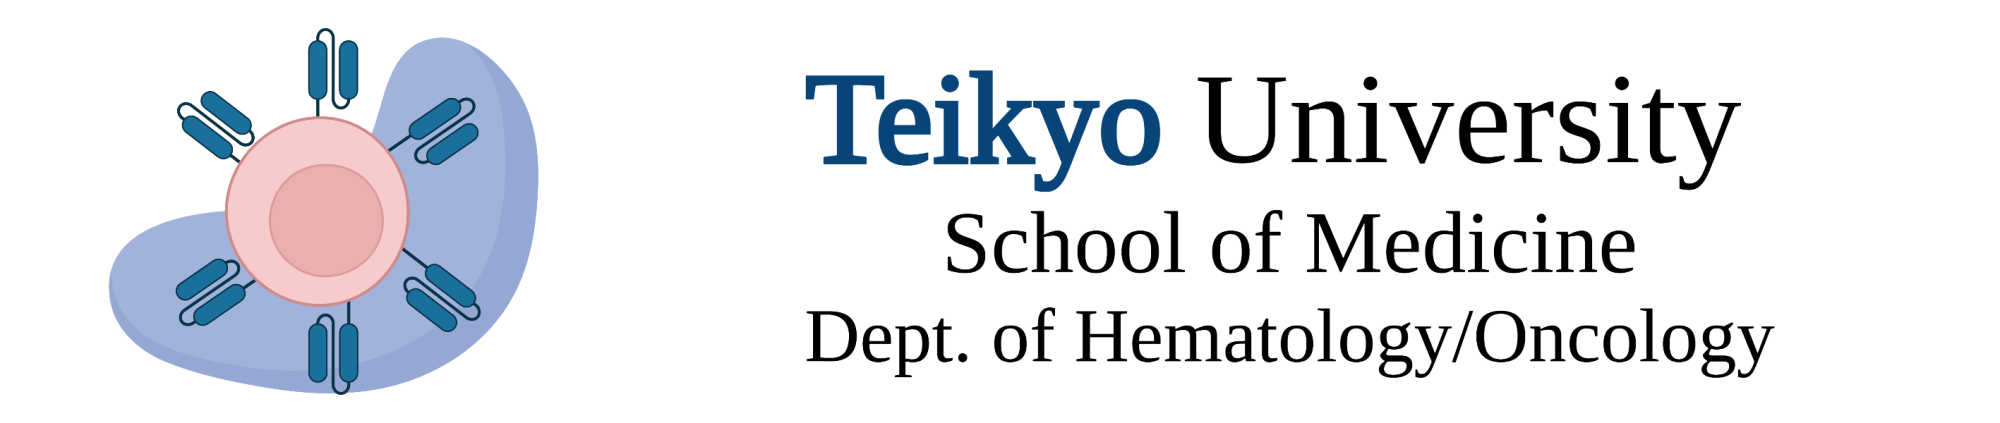 Teikyo hematology/oncology